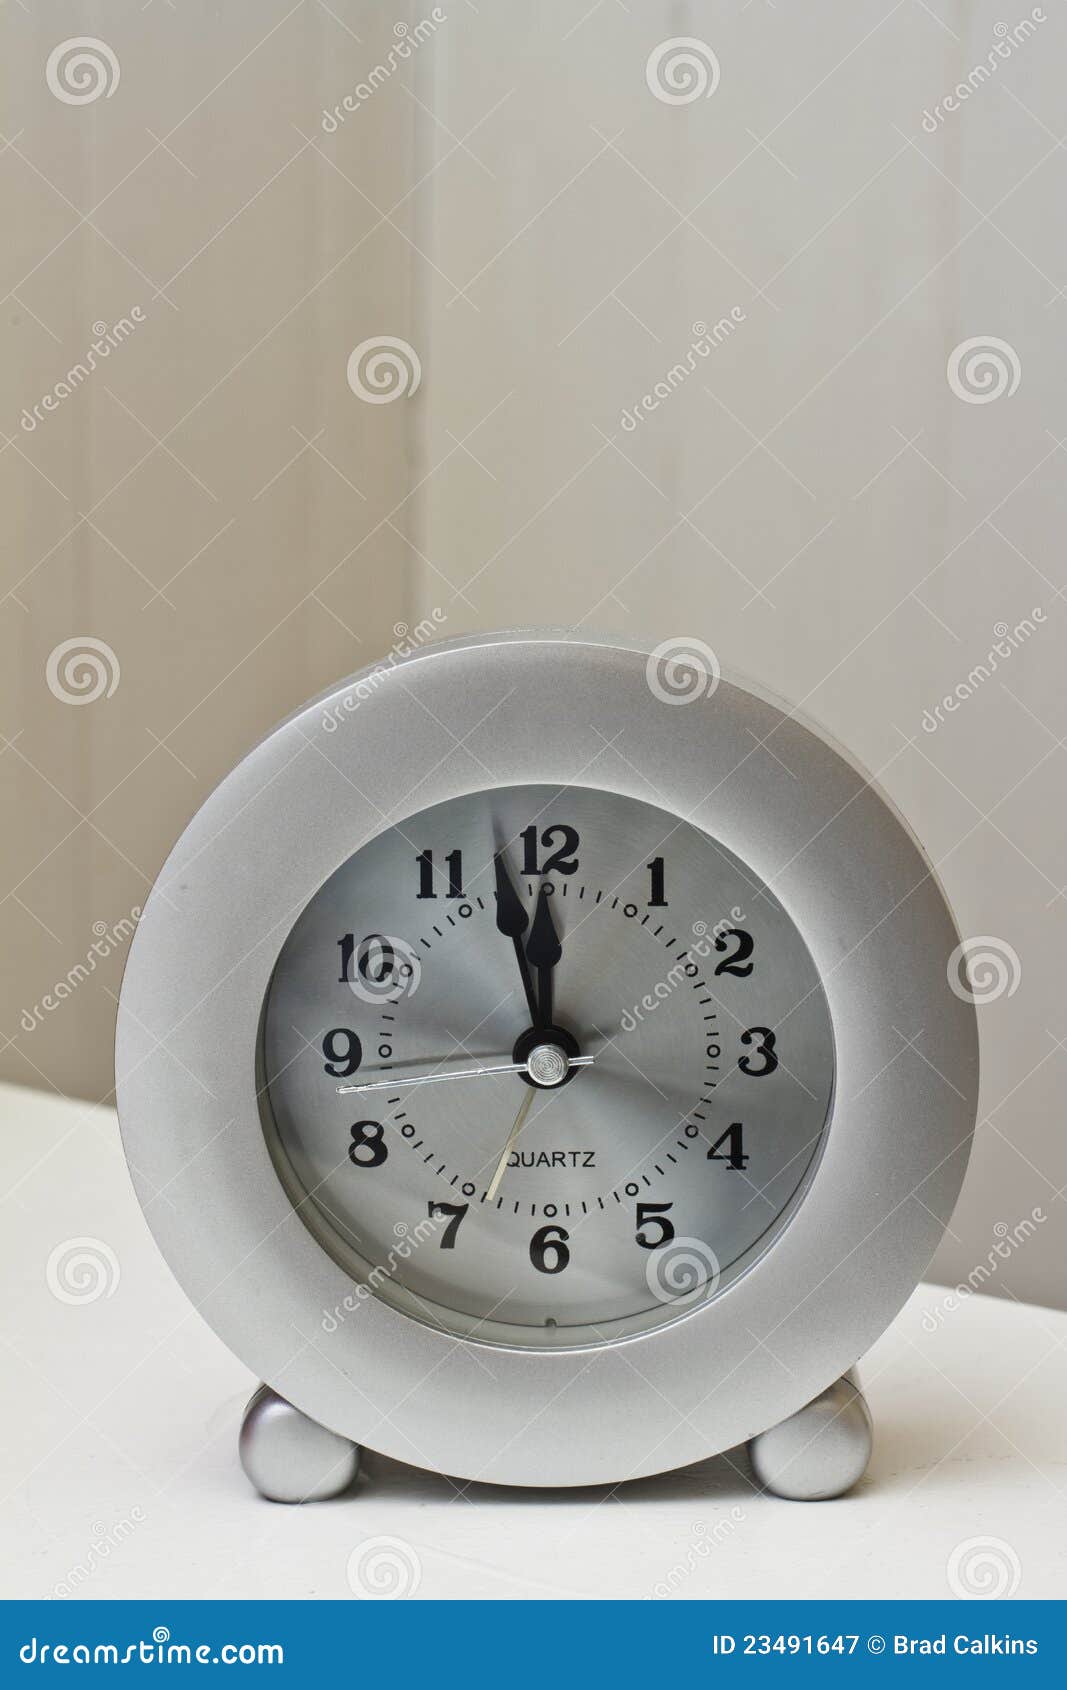 clock at noon